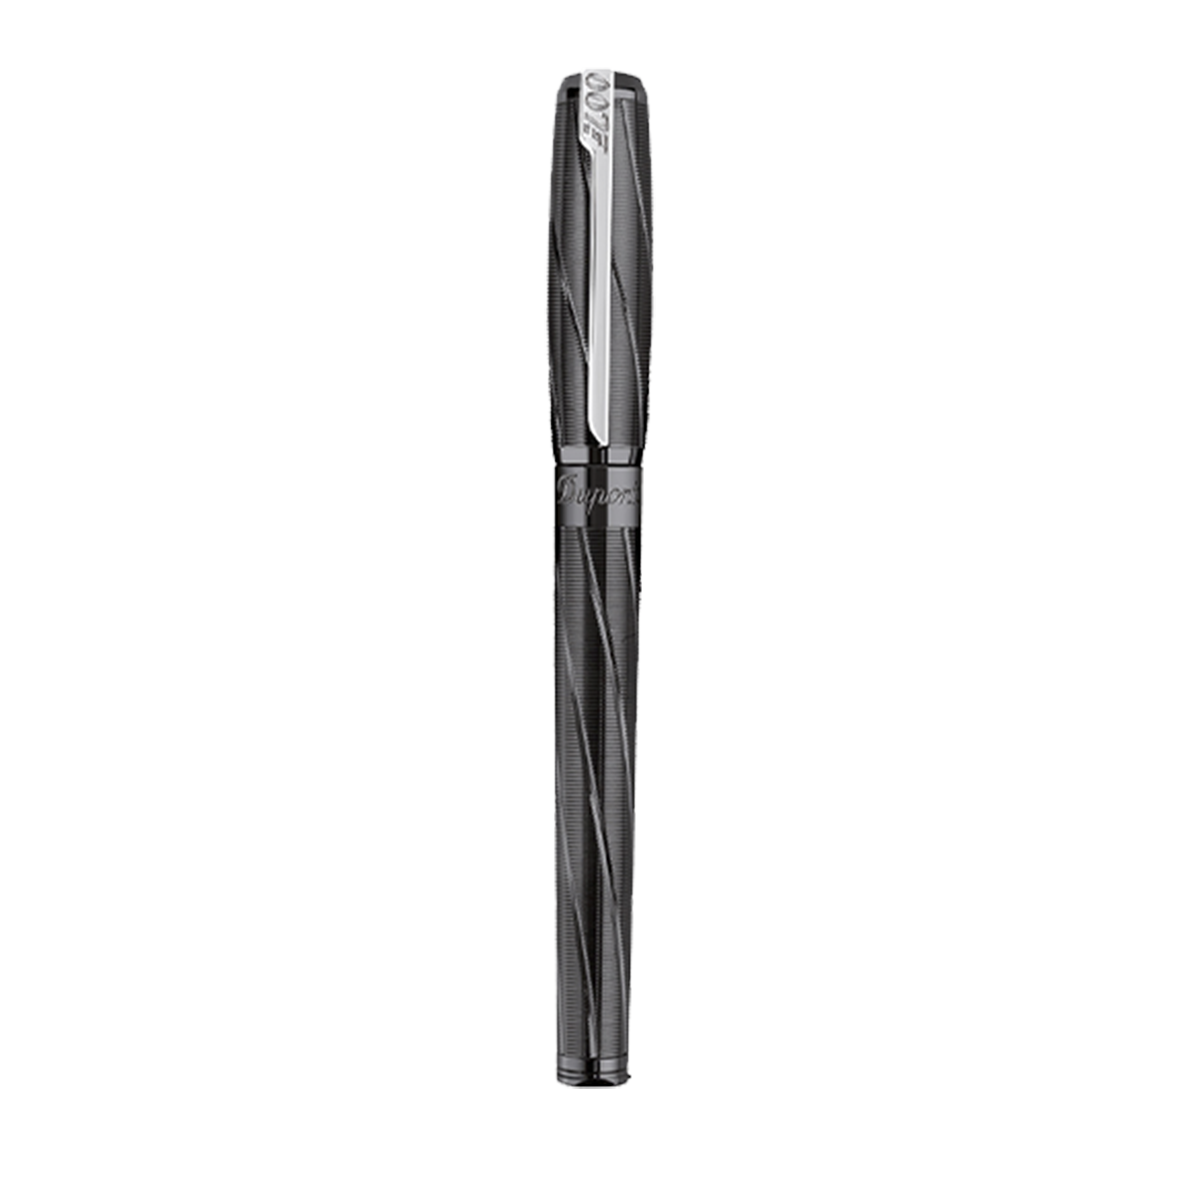 Перьевая ручка Premium James Bond 141034 Цвет Чёрный Отделка чёрным PVD покрытием | S.T. Dupont